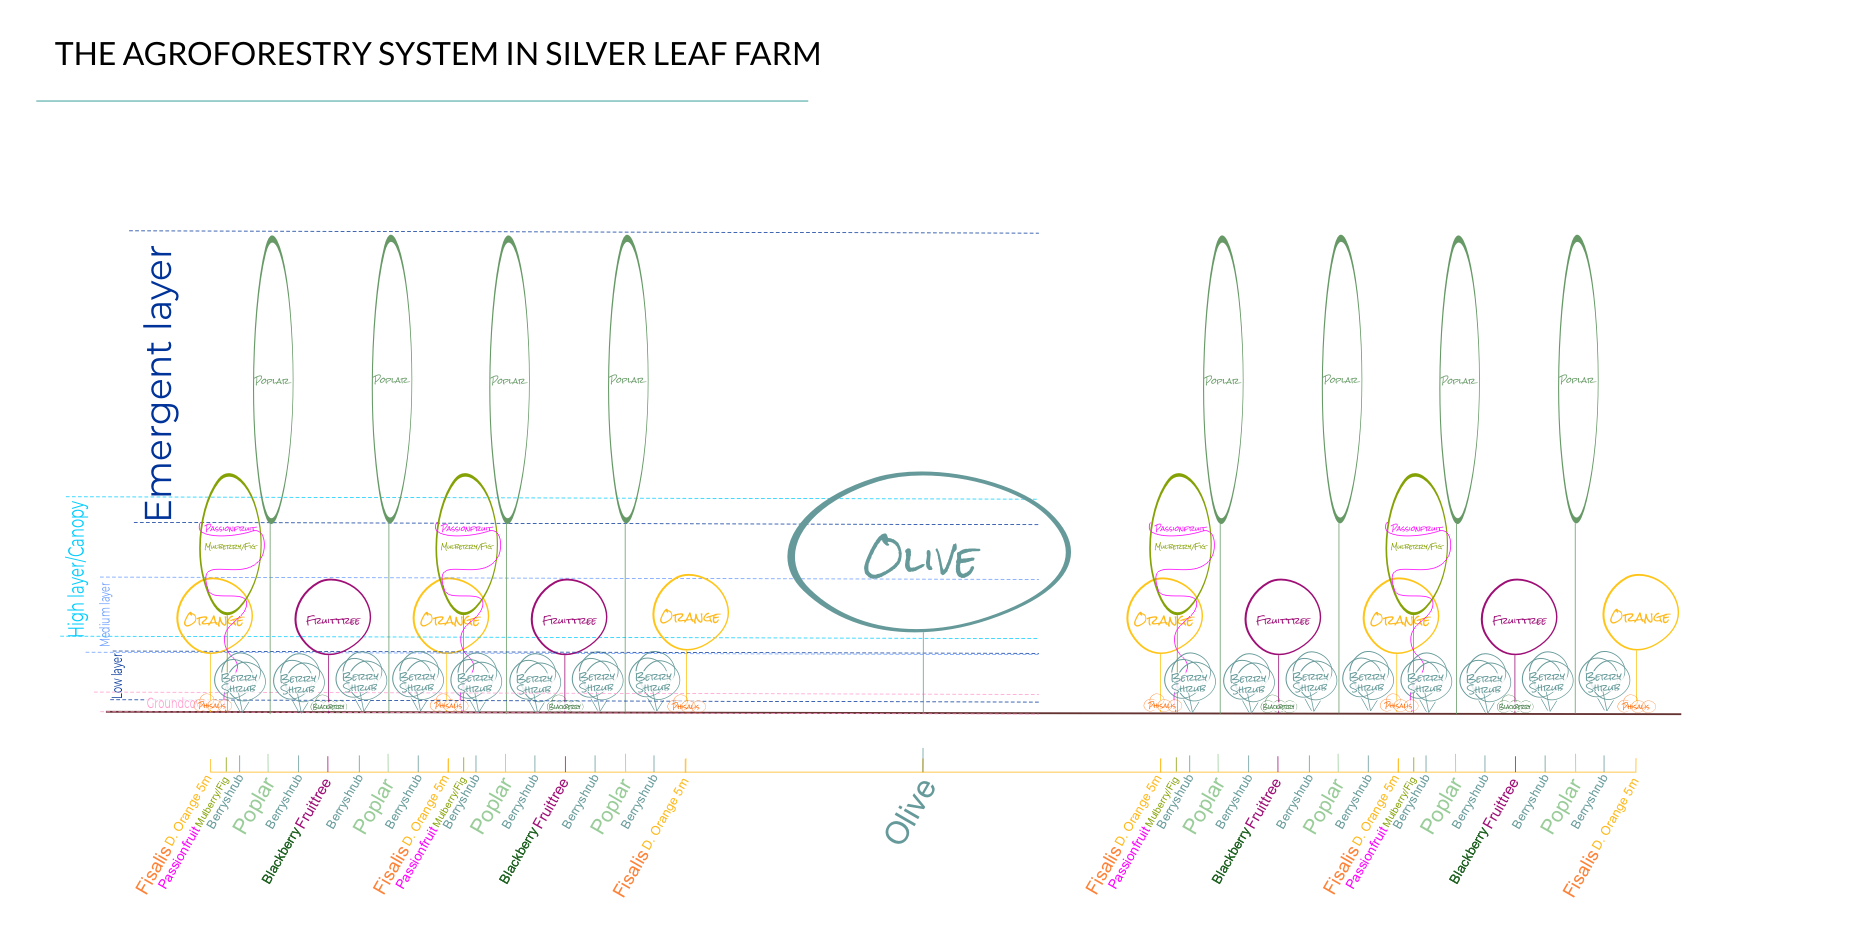 Das Agroforstwirtschaftssystem auf der silver leaf farm